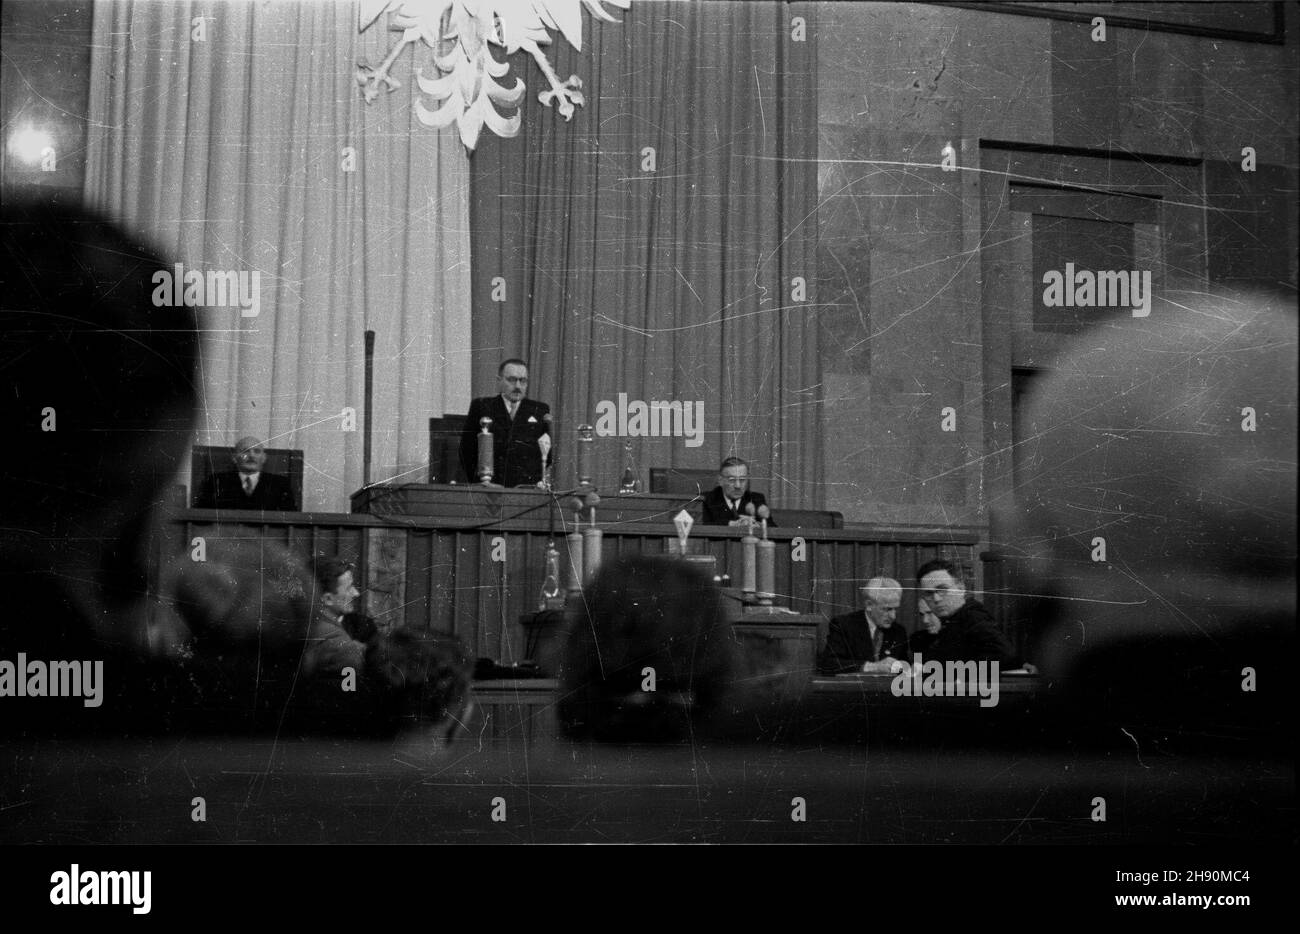 Warszawa, 1947-02-04. Pierwsze posiedzenie Sejmu Ustawodawczego. Nz. prezydent Krajowej Rady Narodowej Boles³aw Bierut otwiera sesjê. Za sto³em prezydialnym wiceprzewodnicz¹cy KRN Stanis³aw Szwalbe (L) i Wac³aw Barcikowski (P). bb/gr  PAP/Jerzy Baranowski      Warsaw, February 4, 1947. The first Sejm meeting. Pictured: the National Council President Boleslaw Bierut opens the session. At the table the National Council Vice President Stanislaw Szwalbe (left) i Waclaw Barcikowski (right).  bb/gr  PAP/Jerzy Baranowski Stock Photo